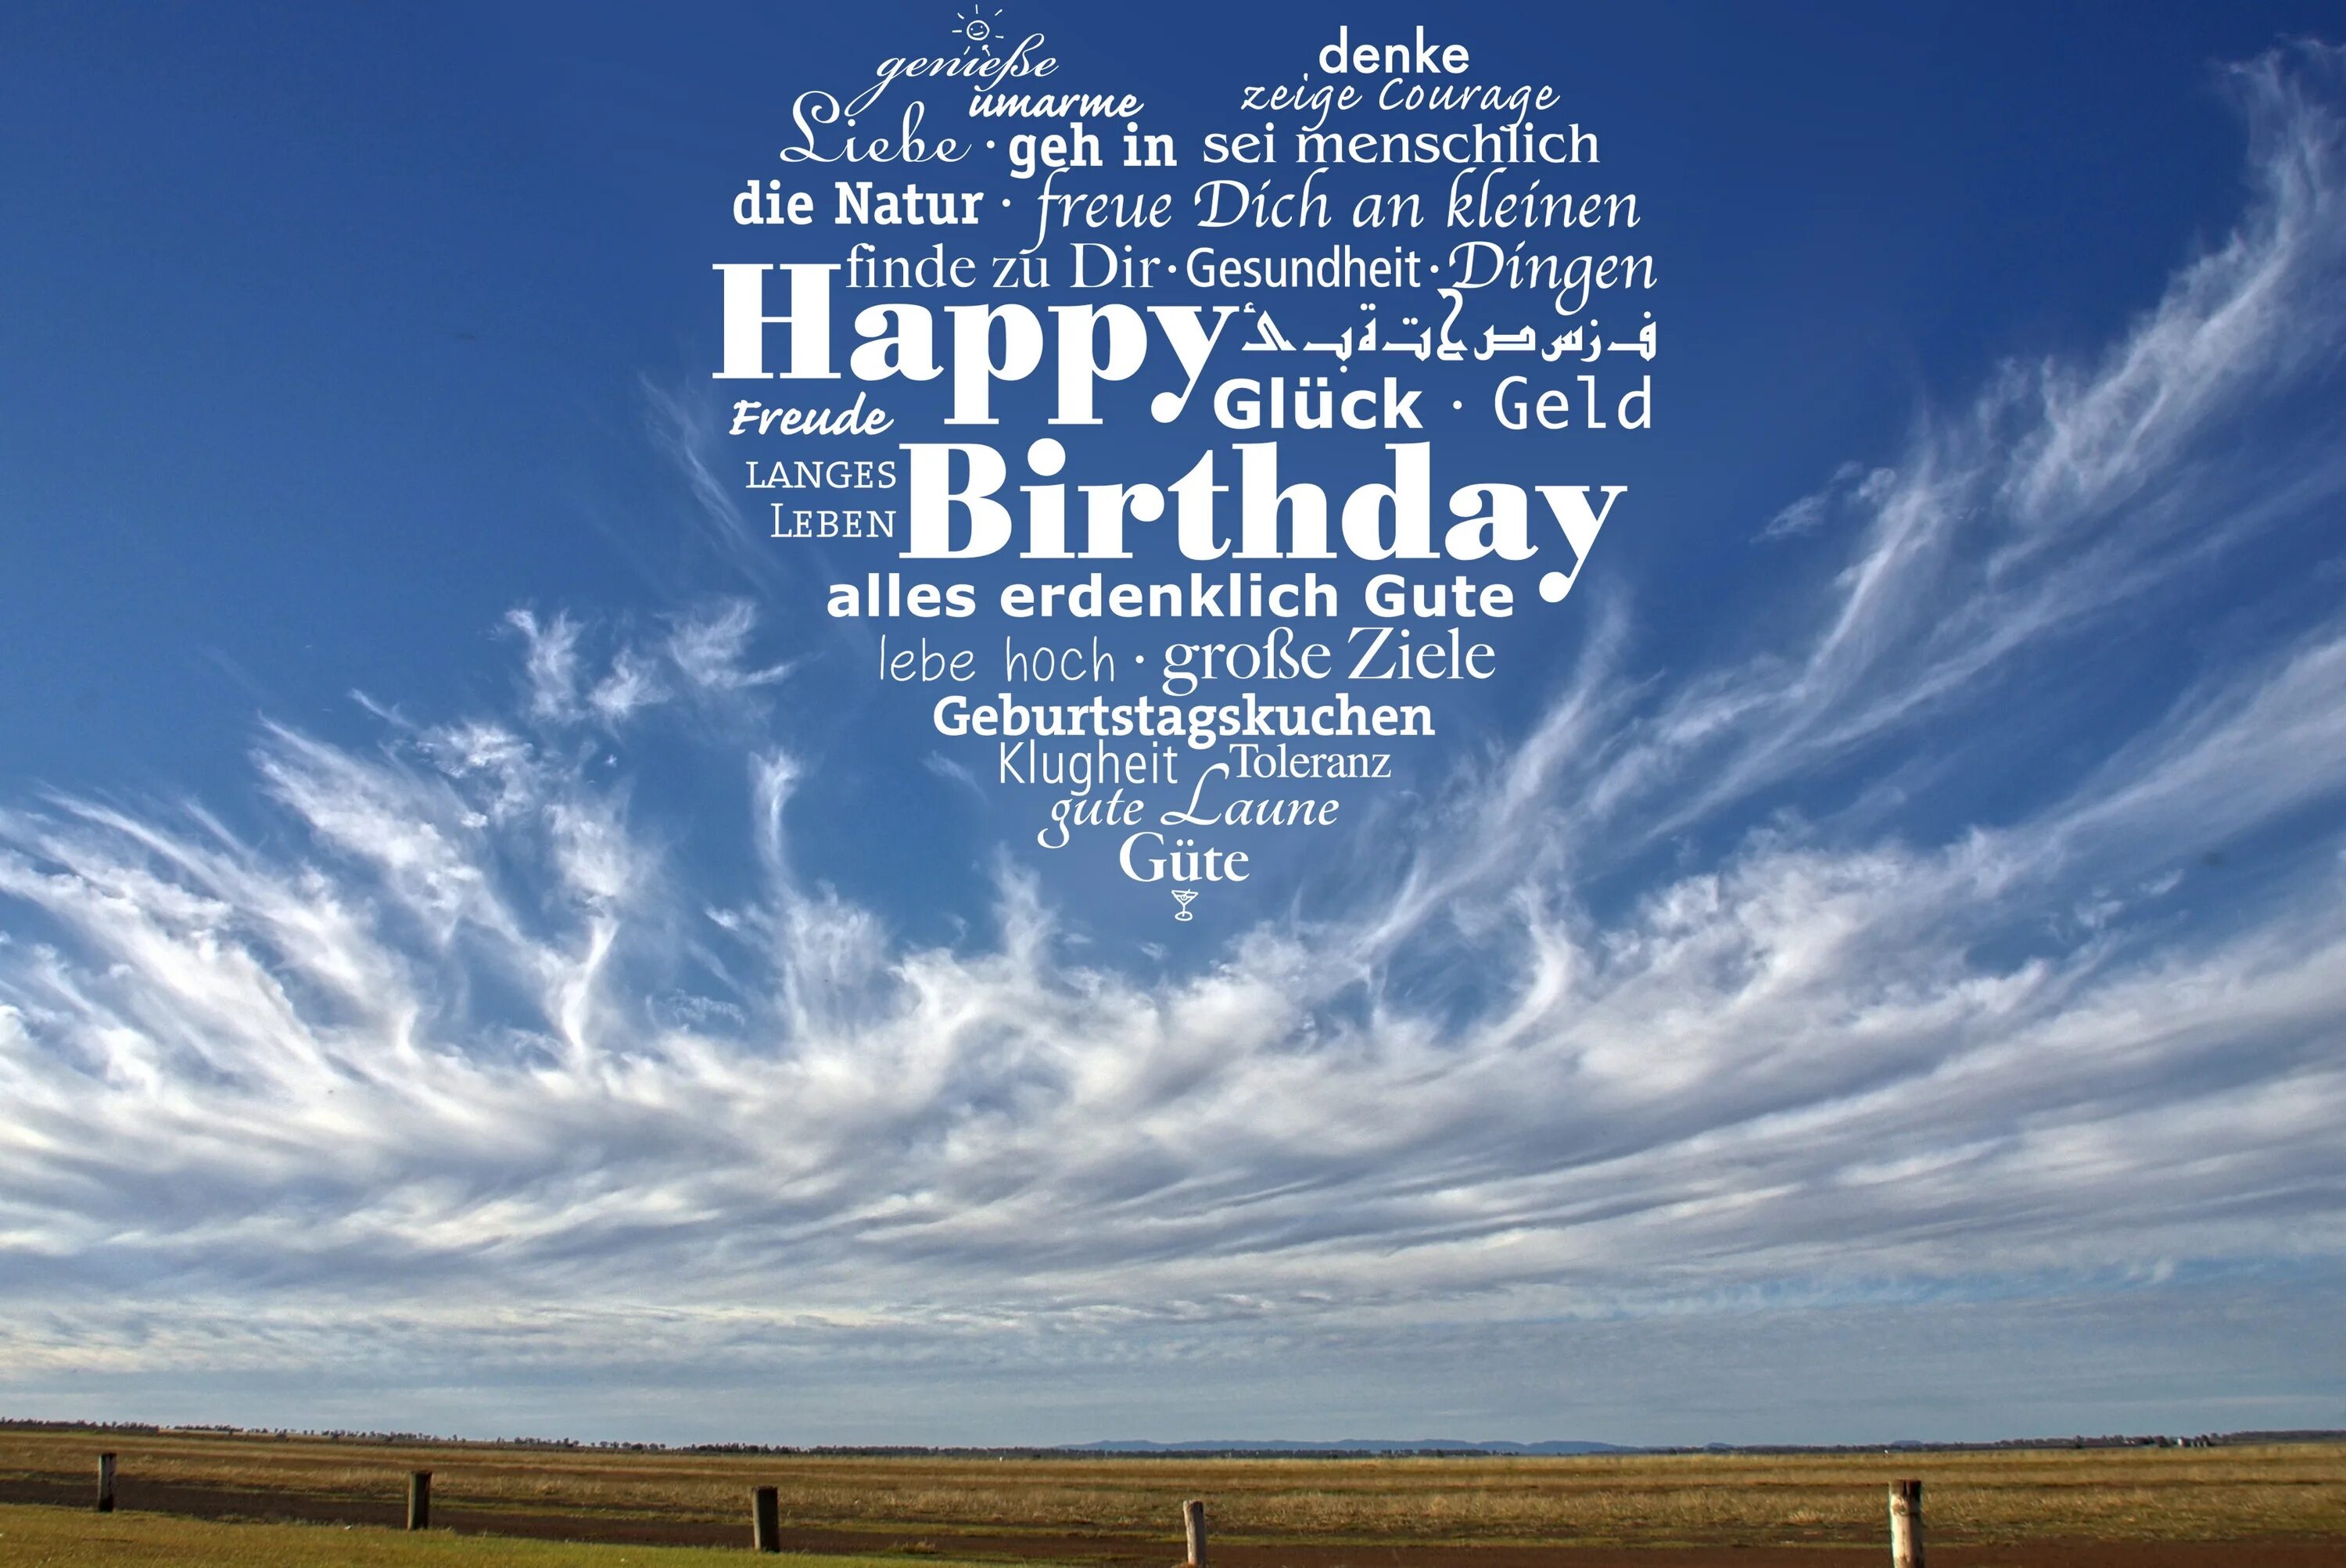 Happy Birthday небо. Открытка с днём рождения небо. Надпись в небе с днем рождения. С днем рождения картинки с небом.